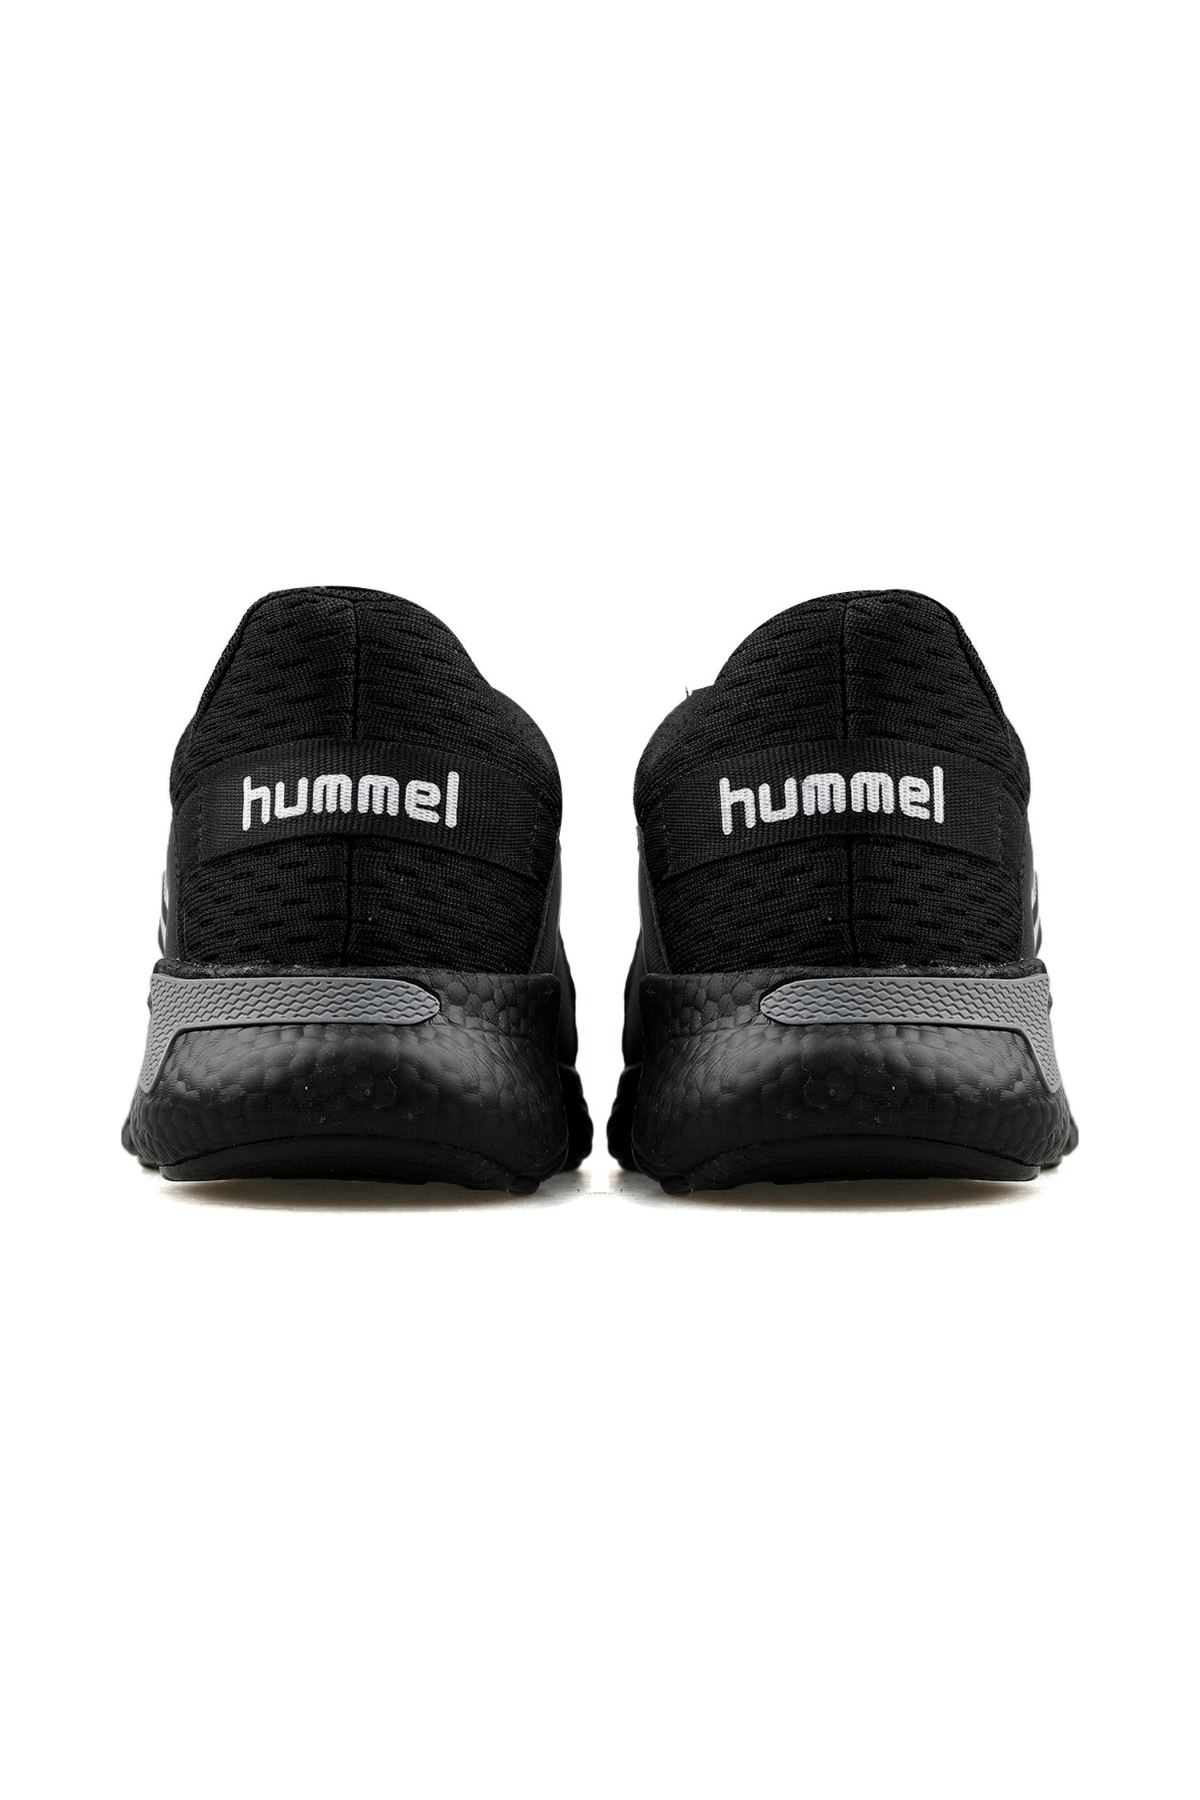 Hummel Hml Xuma Erkek Siyah Spor Ayakkabı - 900136-2001